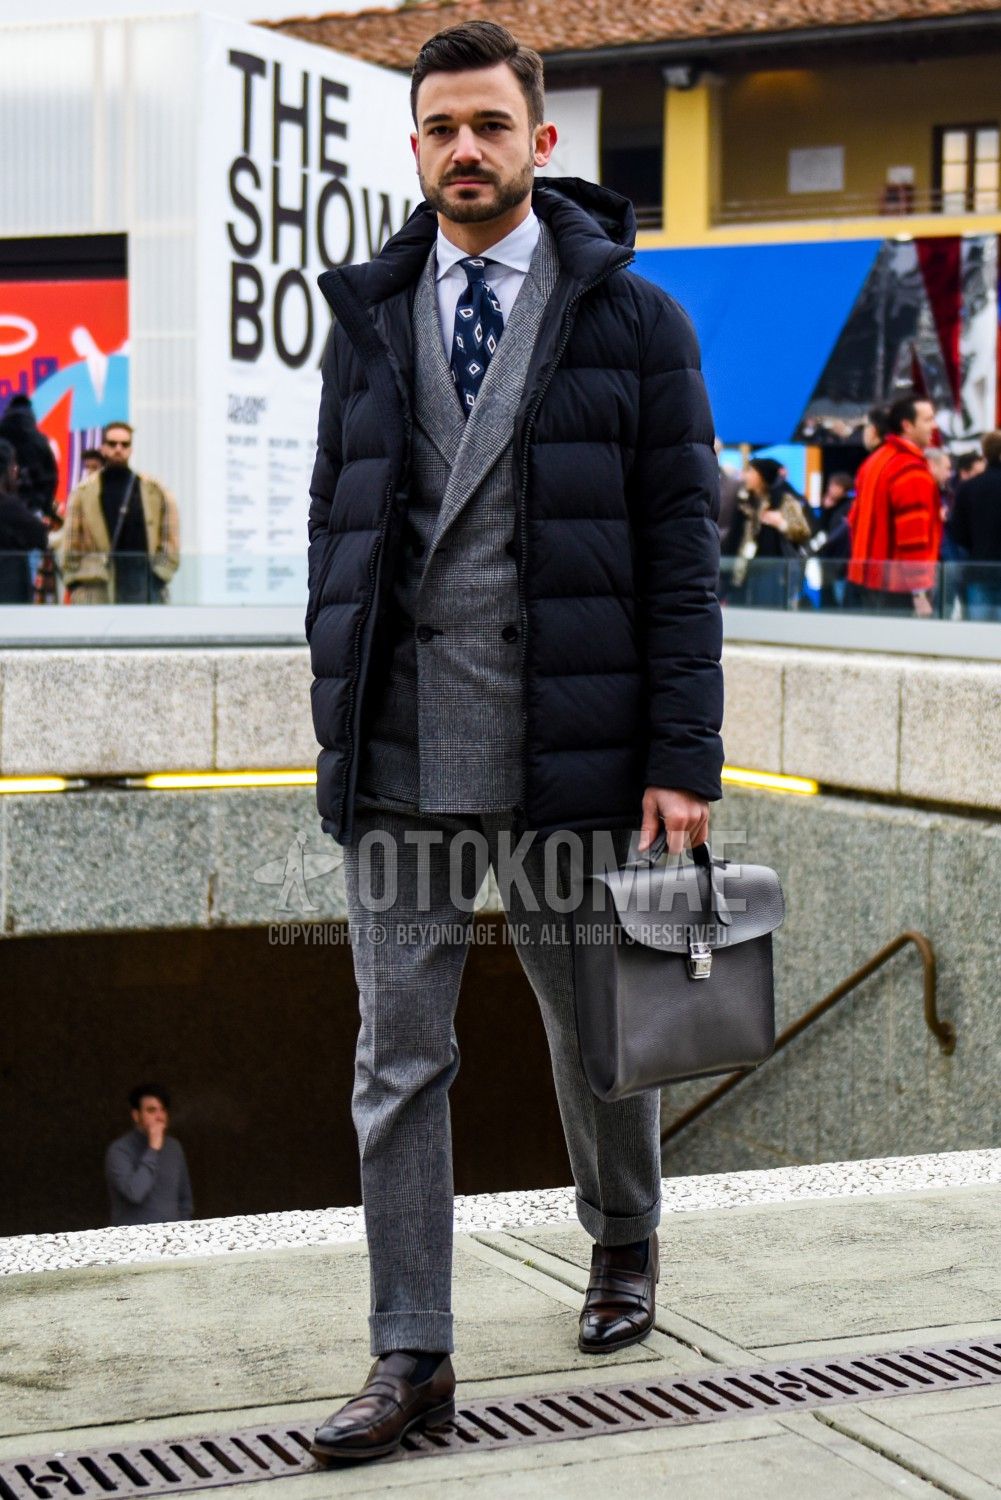 スーツに合うダウンジャケット選びで注目したい3のポイントとおすすめダウンを紹介 メンズファッションメディア Otokomaeotokomae 男前研究所